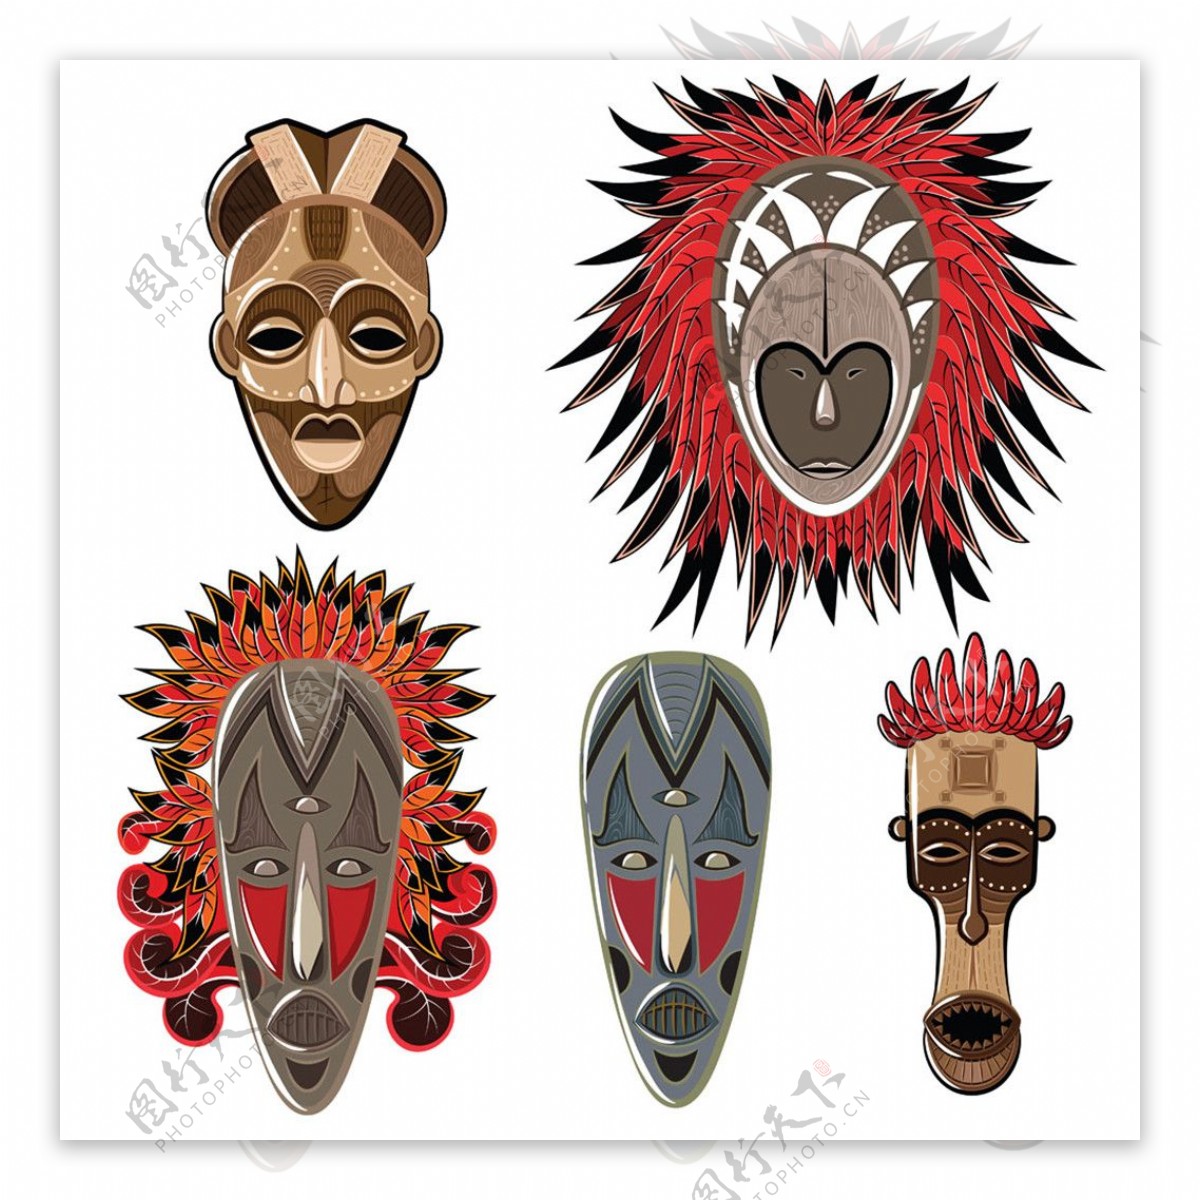 民族羽毛面具图片